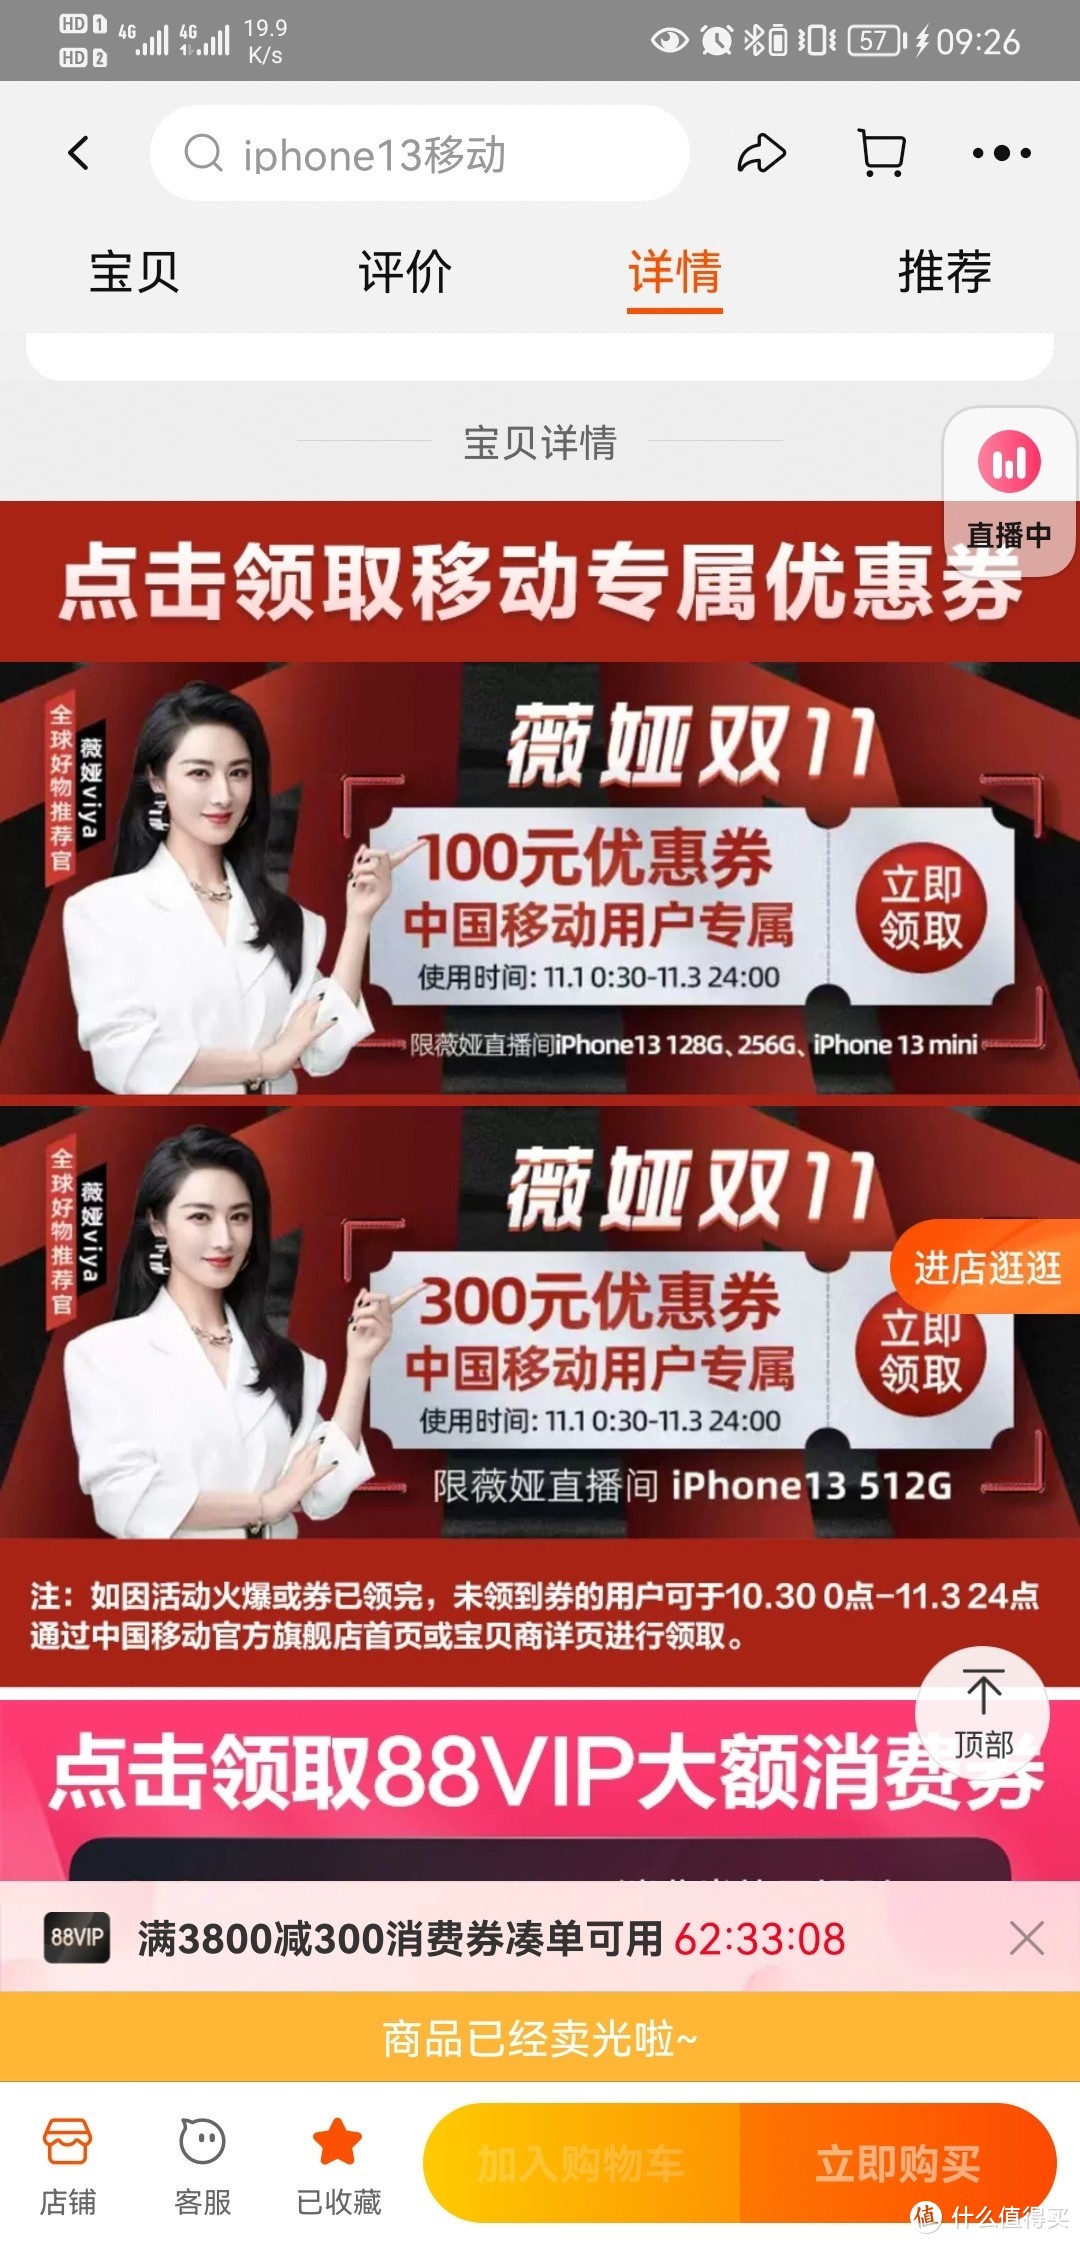 淘宝88VIP中国移动官方旗舰店5380购买iPhone13 128G